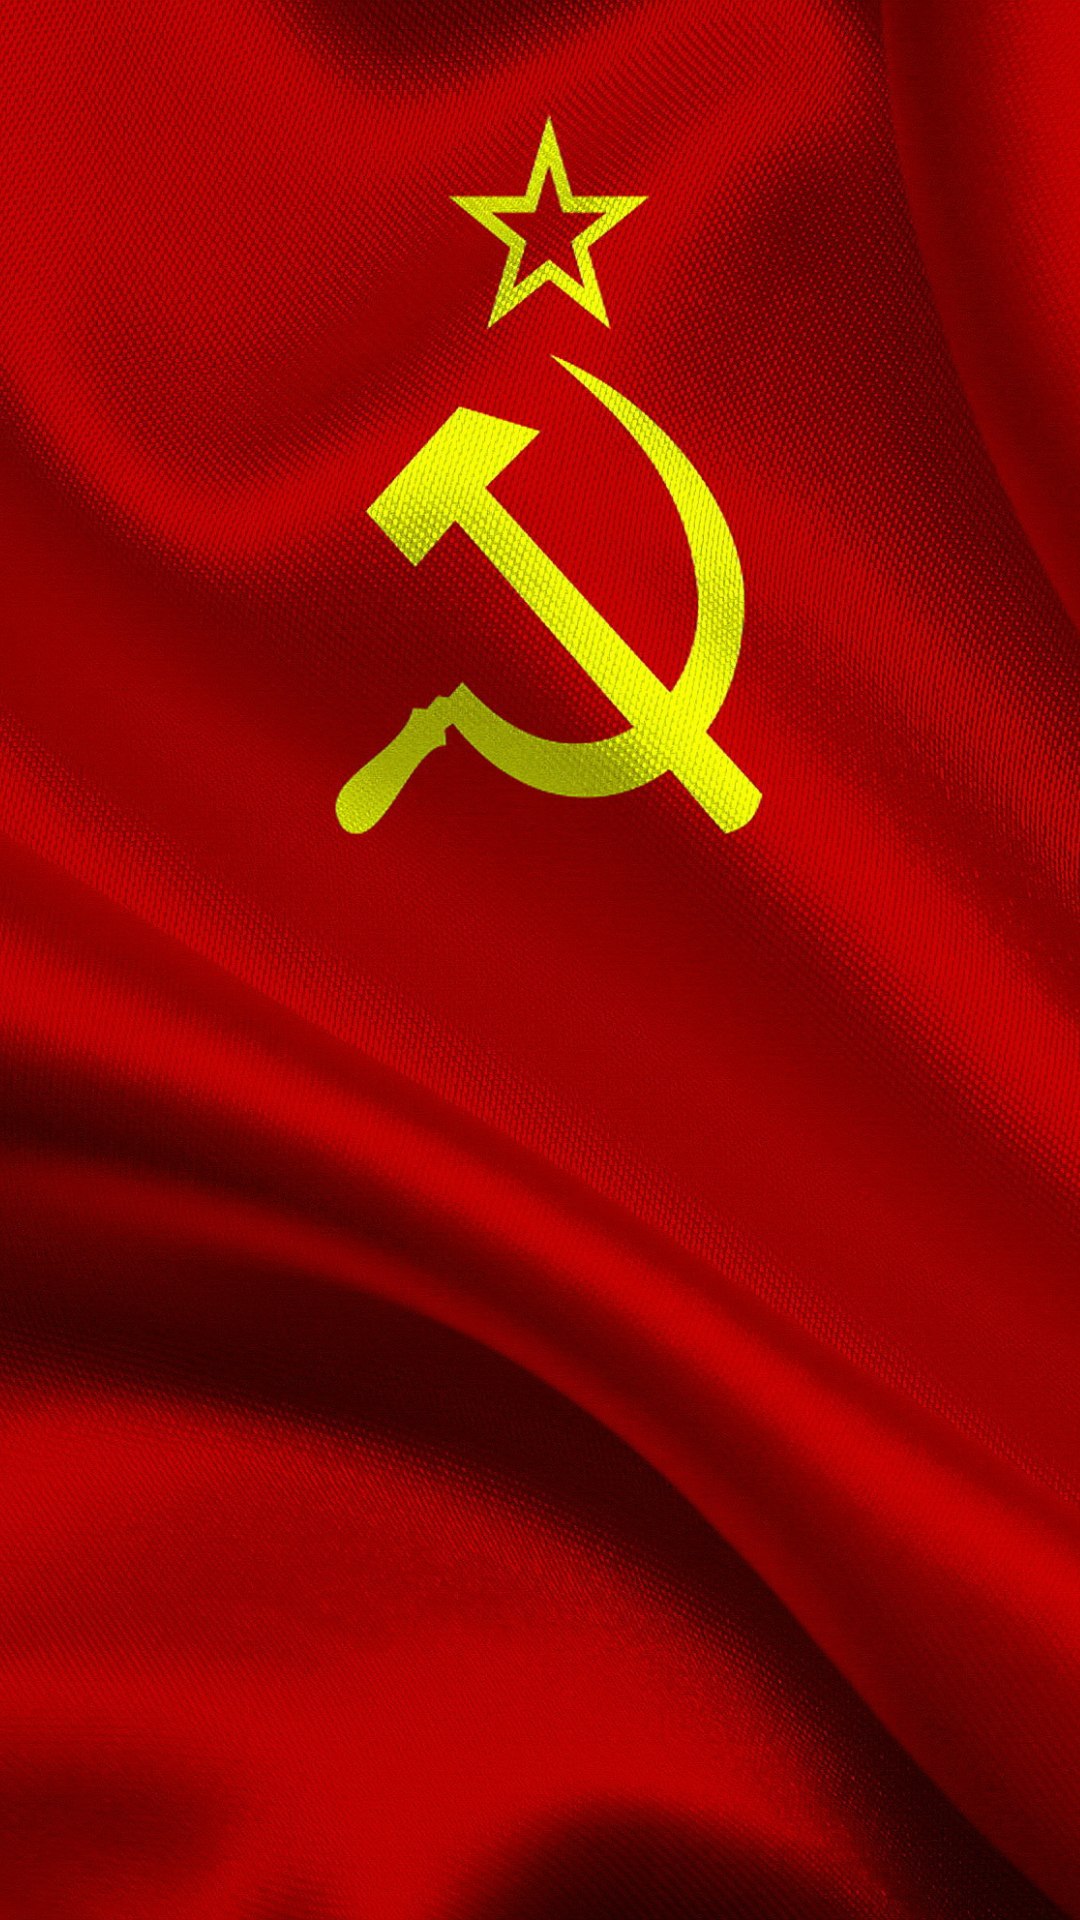 Сссср. Флаг советского Союза. Флаг советского Союза серп и молот. Флаг СССР 1936. Флаг СССР 1939.